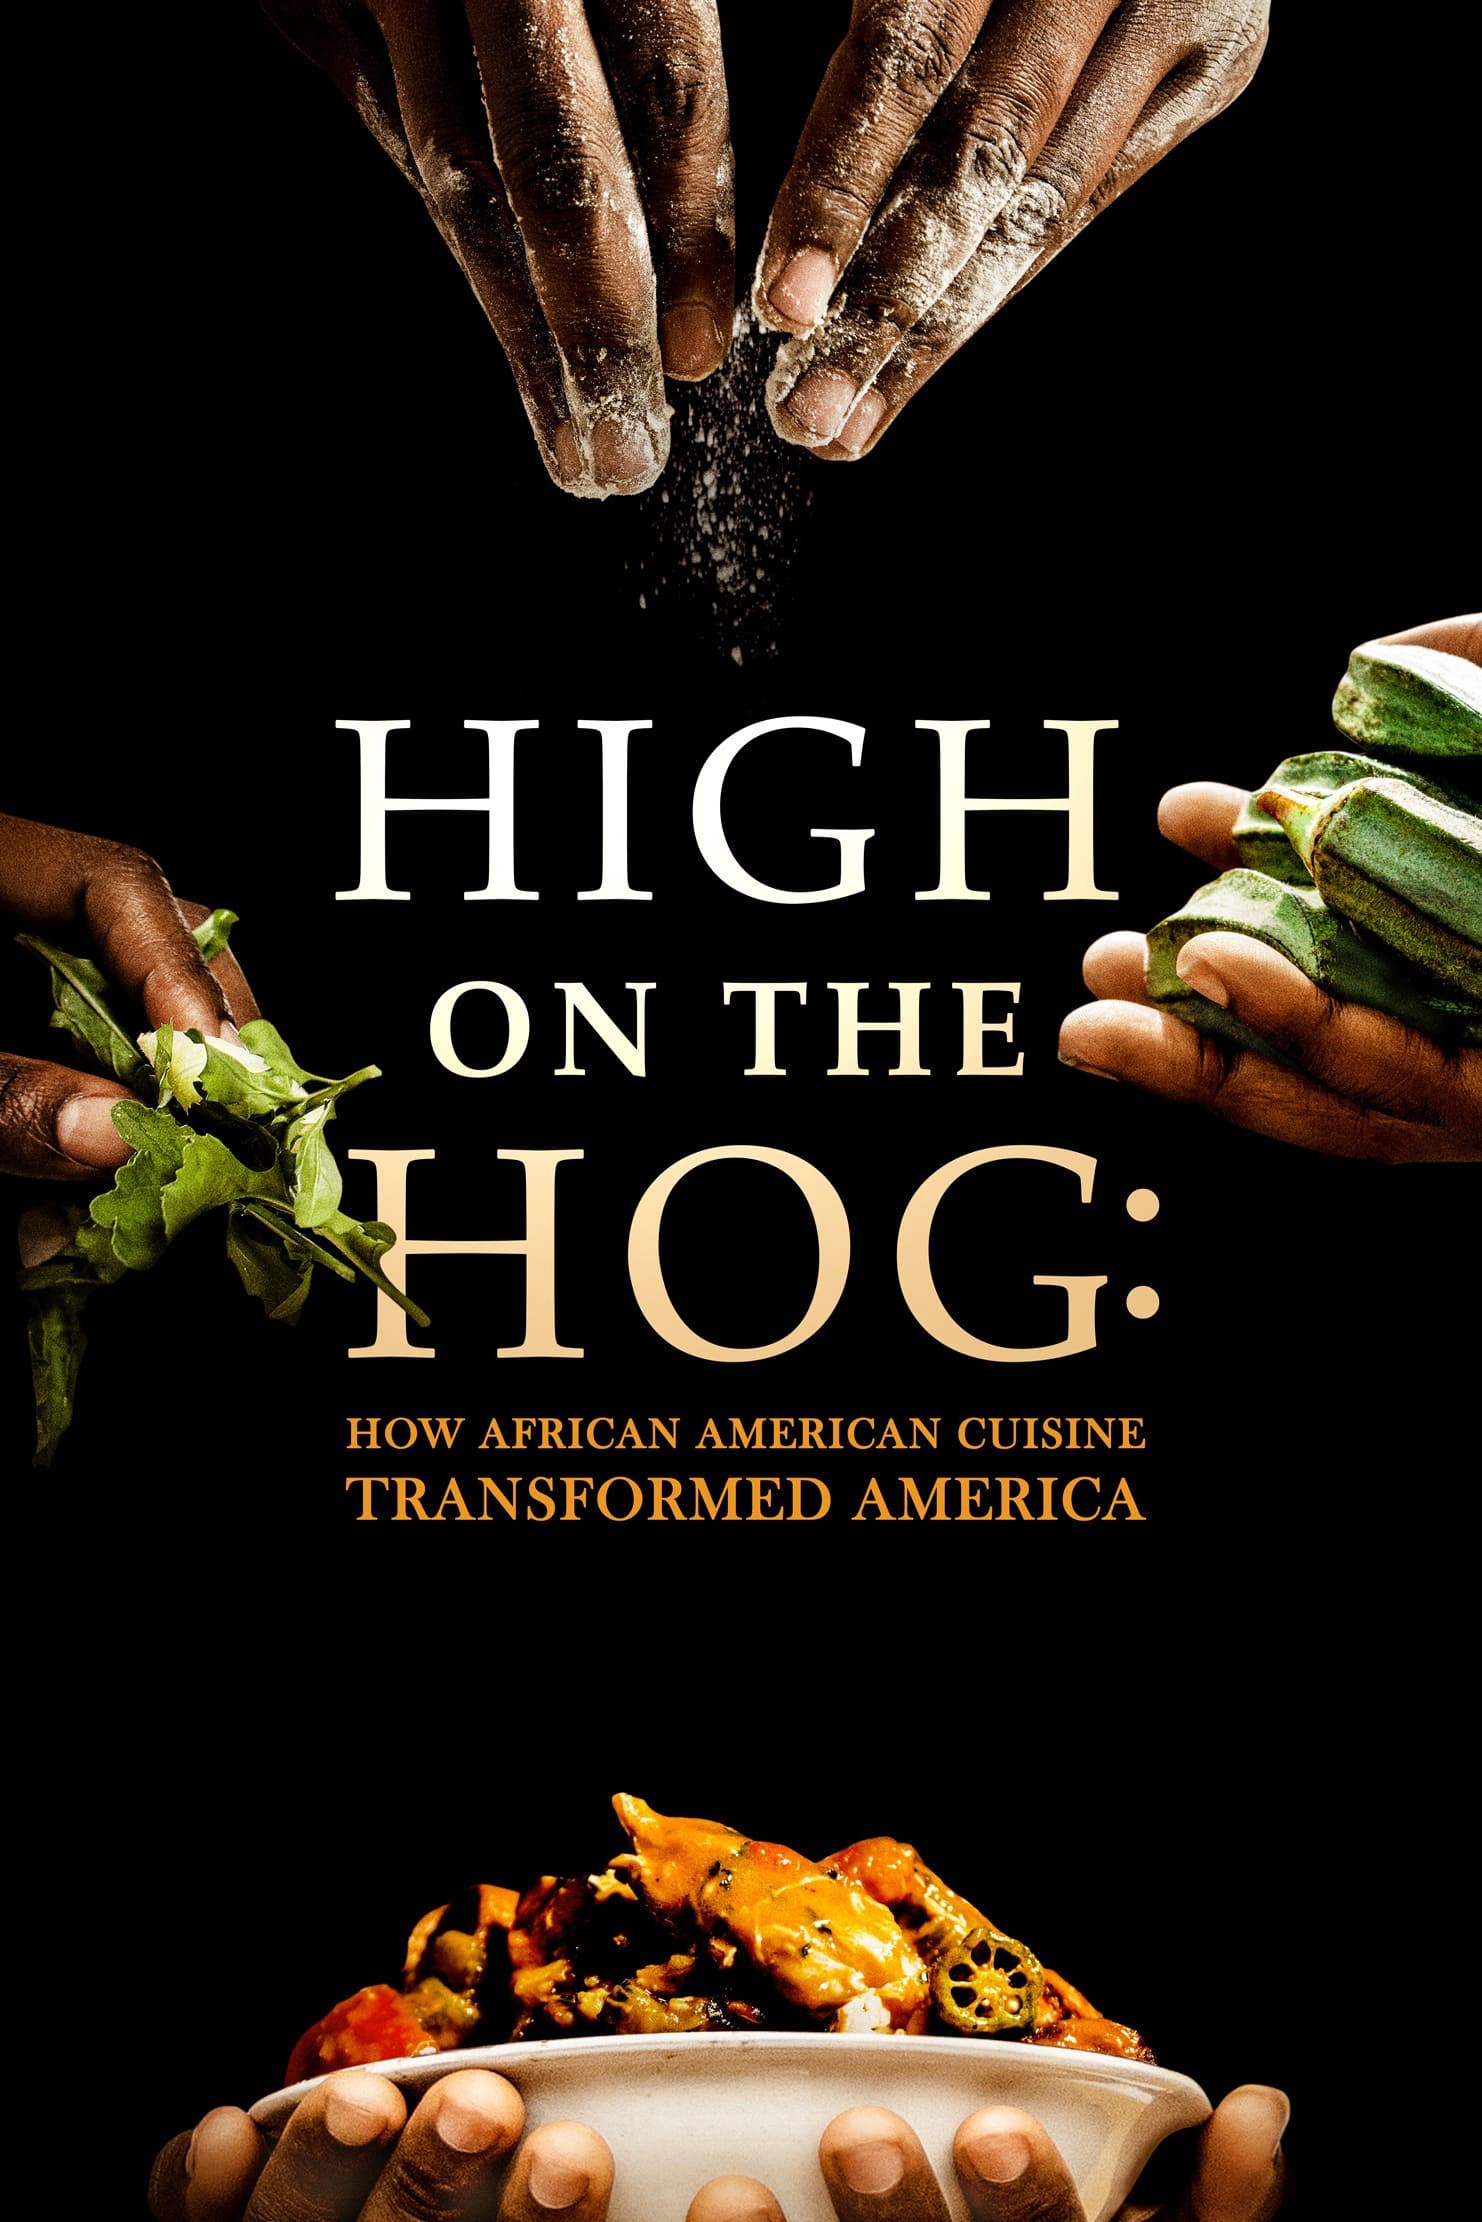 High on the Hog: Ẩm thực Mỹ gốc Phi đã thay đổi Hoa Kỳ như thế nào (S2) - High on the Hog: Ẩm thực Mỹ gốc Phi đã thay đổi Hoa Kỳ như thế nào (S2) (2021)